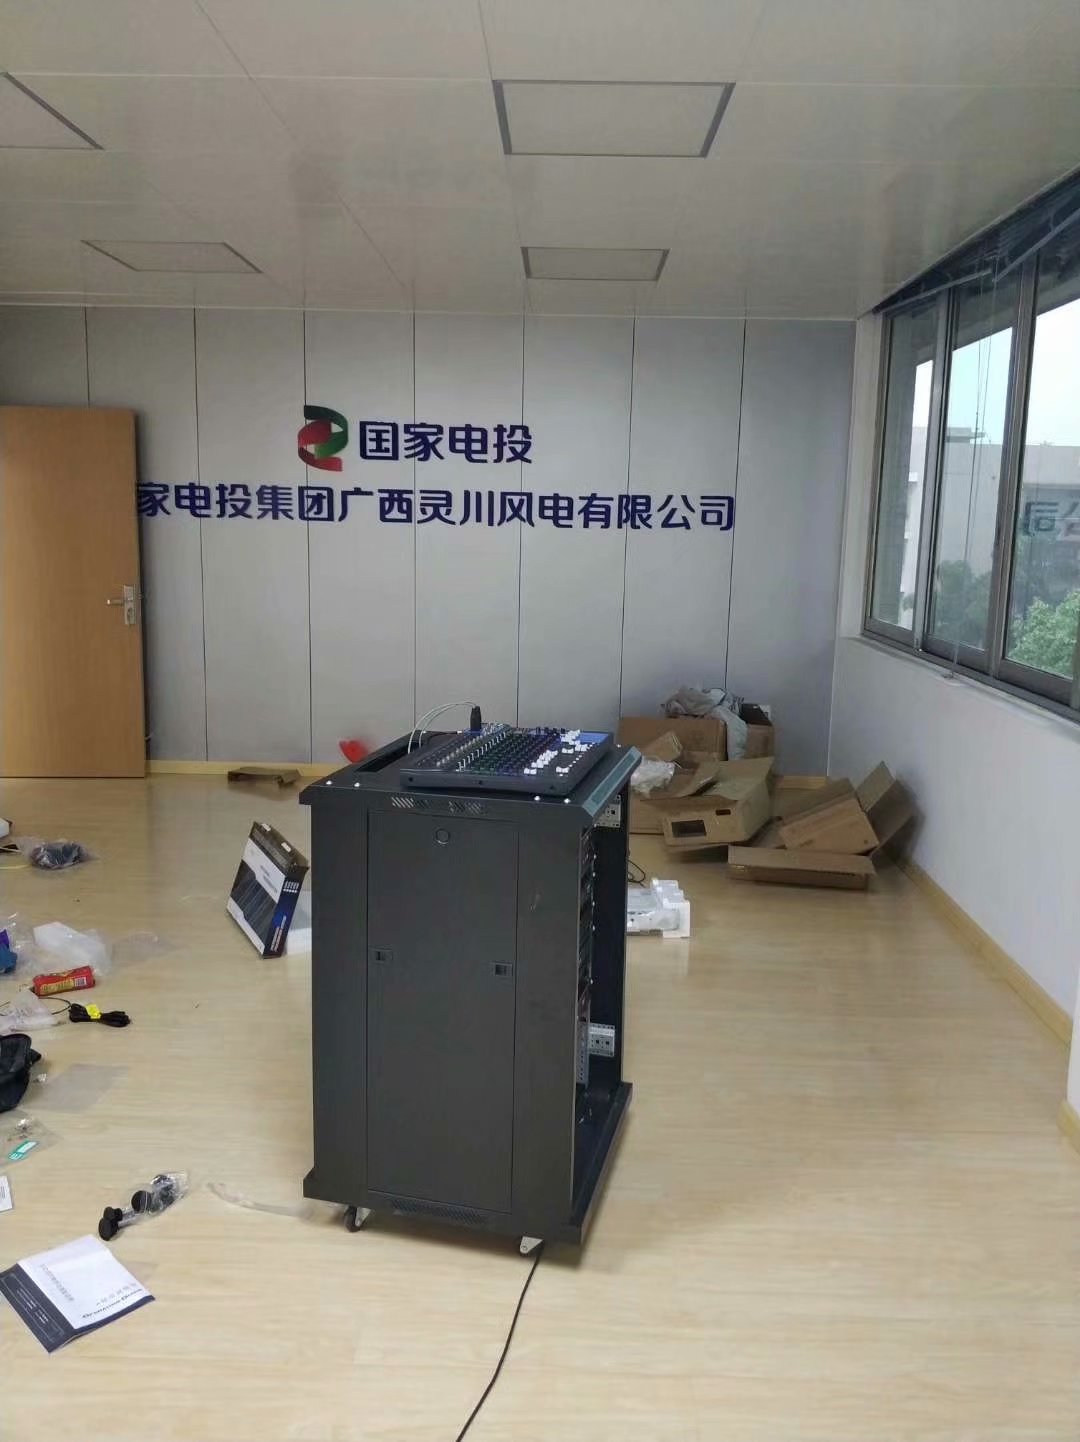 兴安县国家电投项目部会议室设备